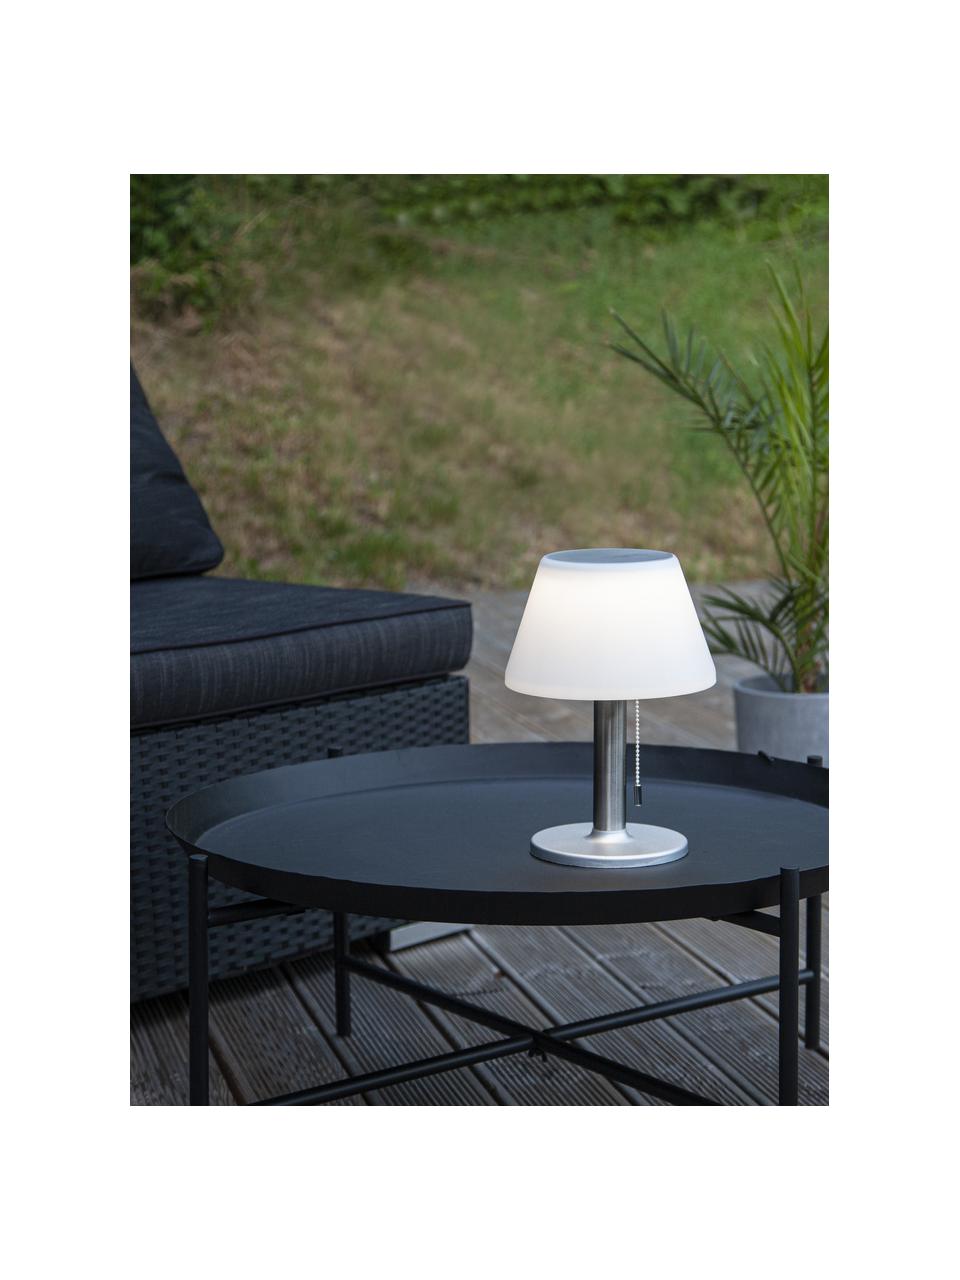 Lámpara de mesa solar para exterior Solia, Pantalla: plástico, Blanco, acero, Ø 20 x Al 28 cm